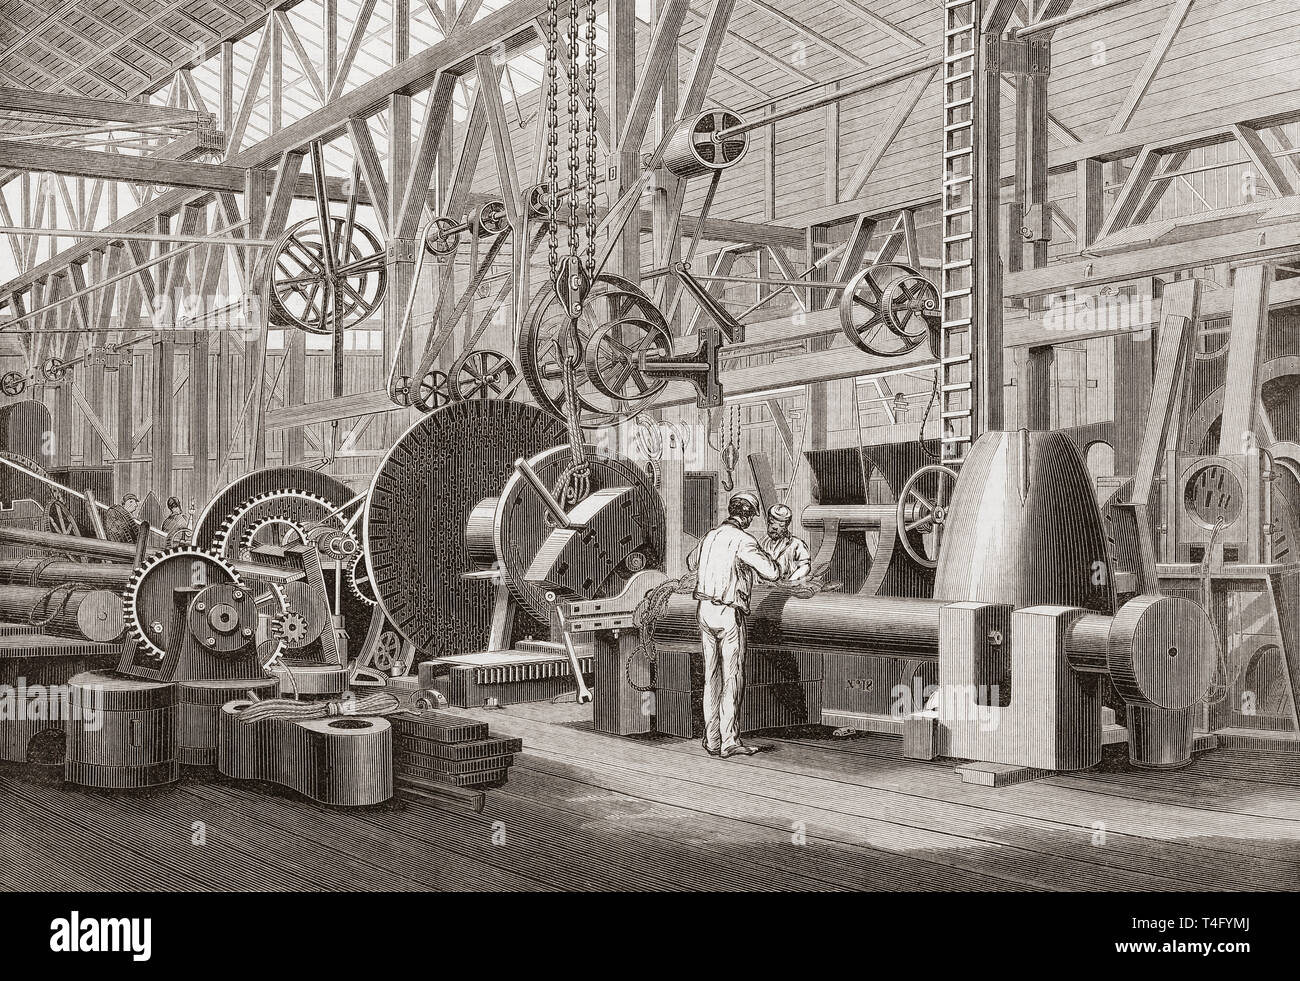 Penn motore marino fabbrica, Greenwich, Londra, Inghilterra del XIX secolo. La rotazione di un albero a pale per una nave a vapore. Dal Illustrated London News, pubblicato 1865. Foto Stock